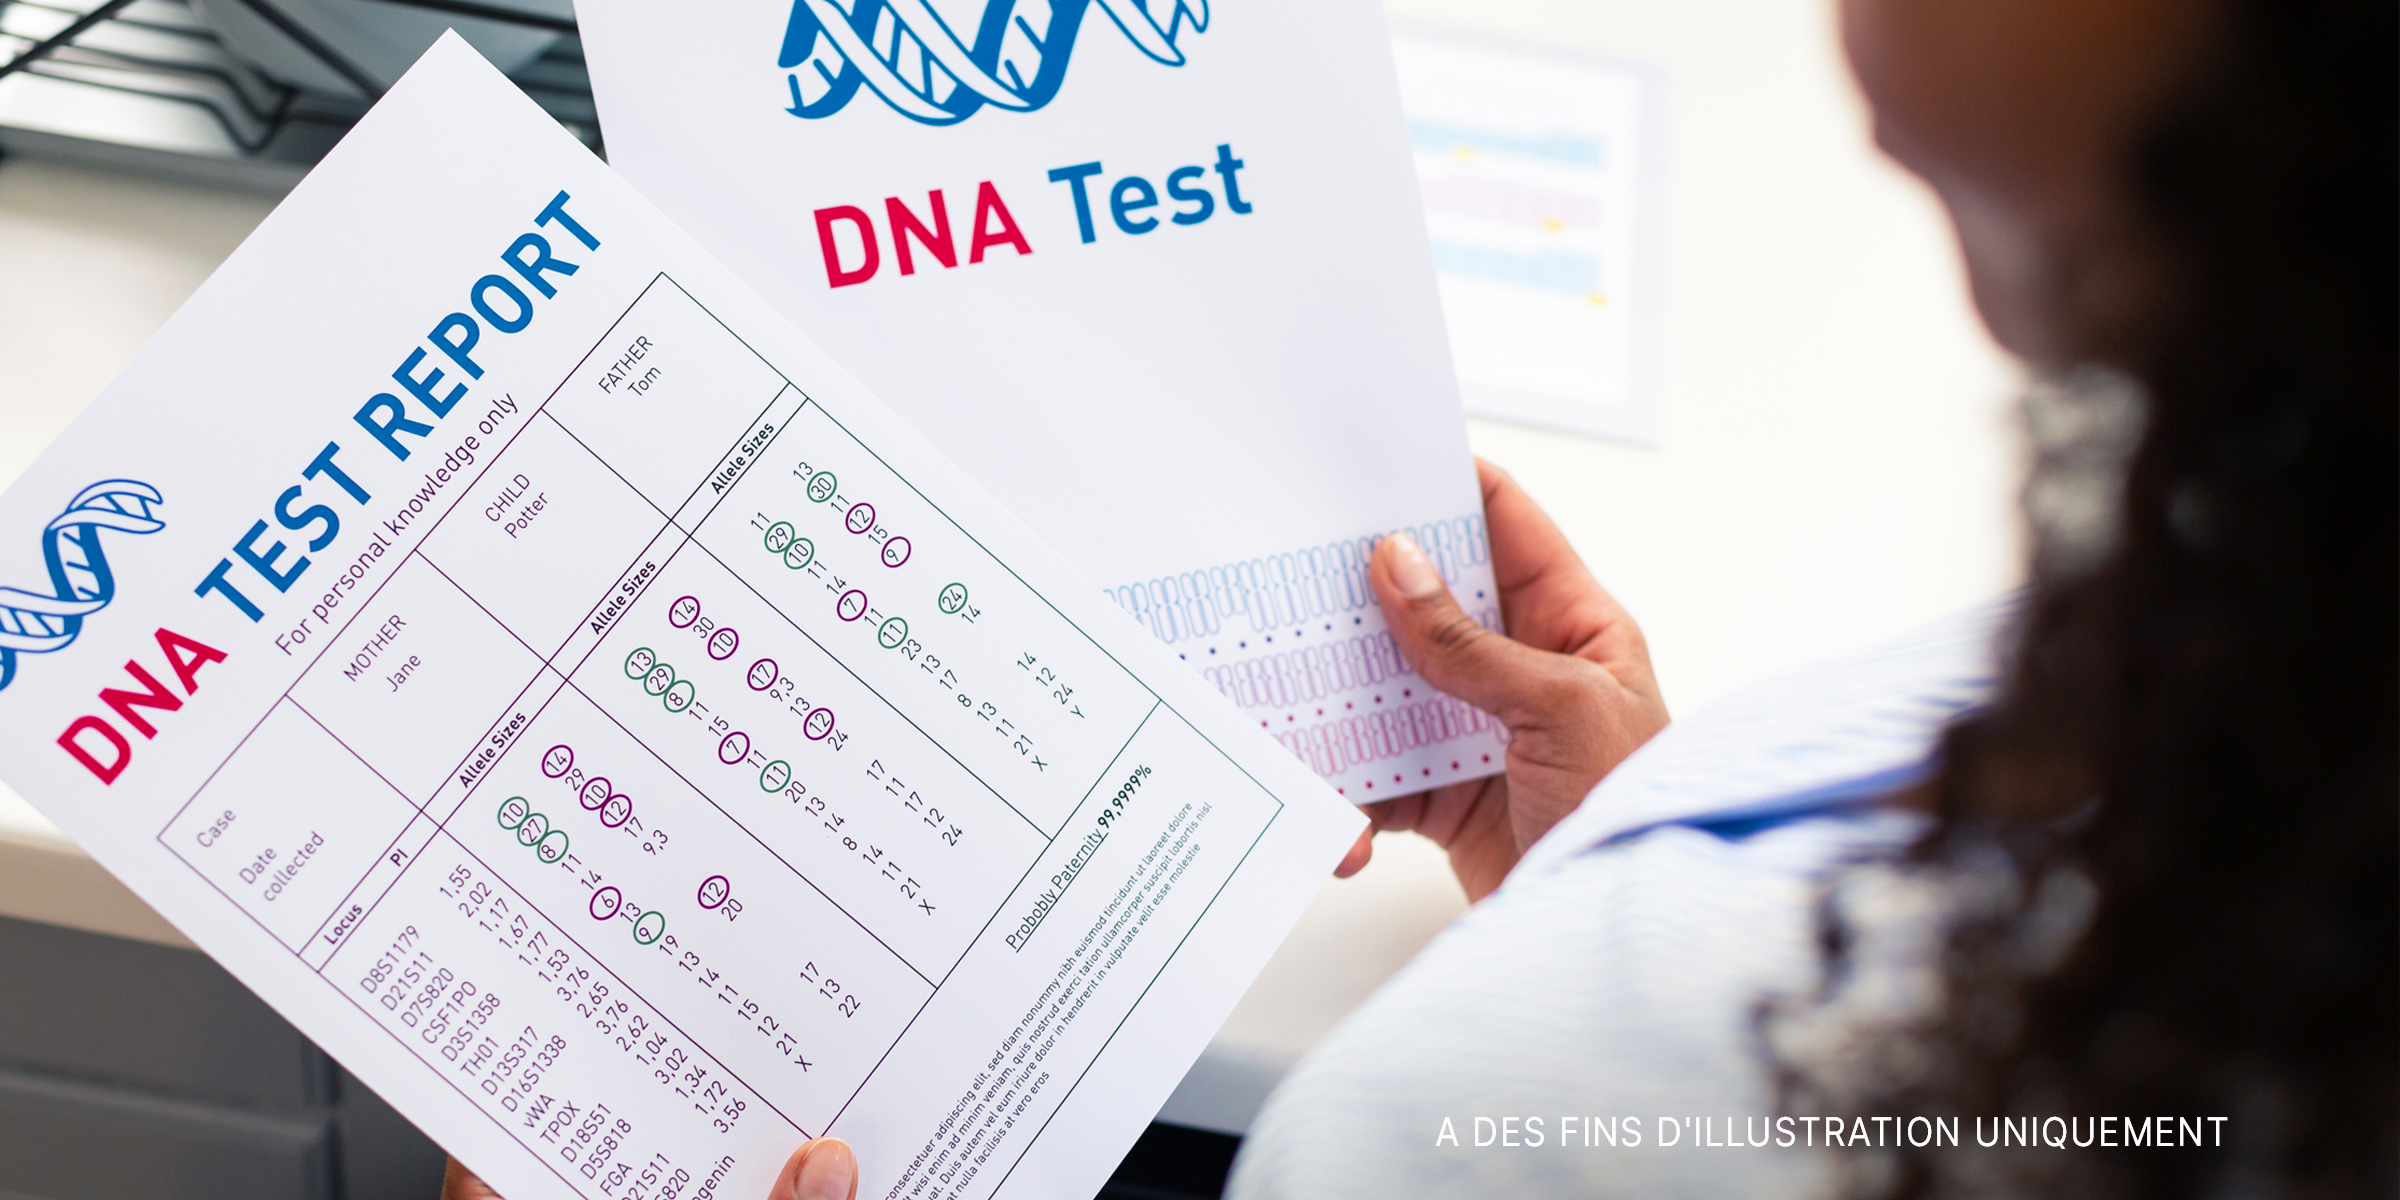 Résultats d'un test ADN | Source : Shutterstock